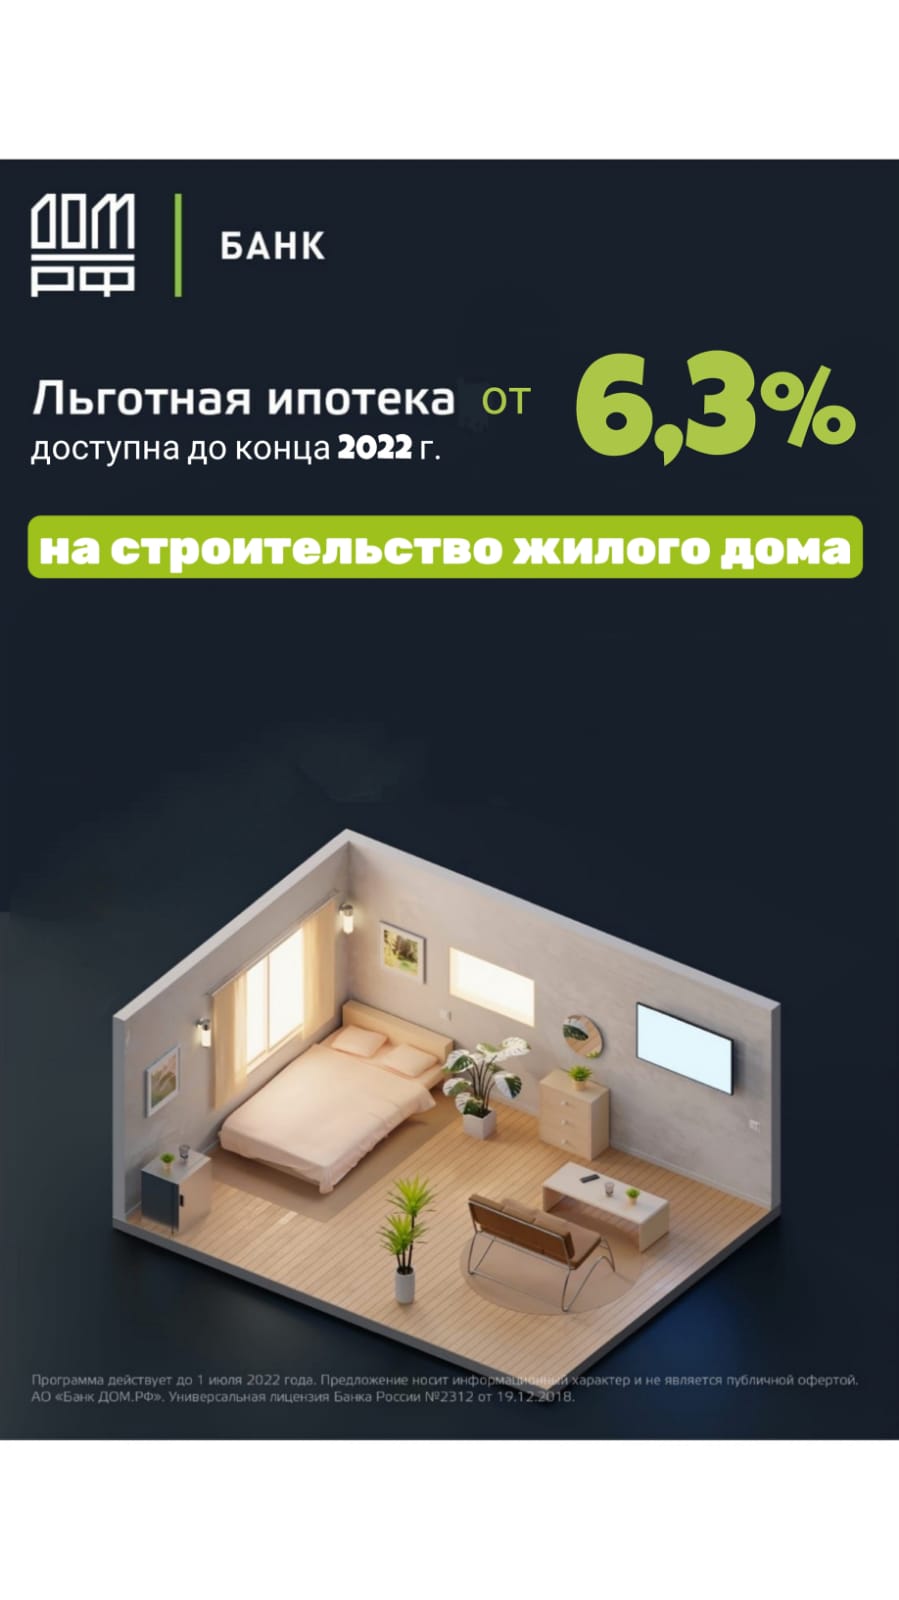 Льготная ипотека от 6,3% на строительство жилого дома от банка ДОМ.РФ